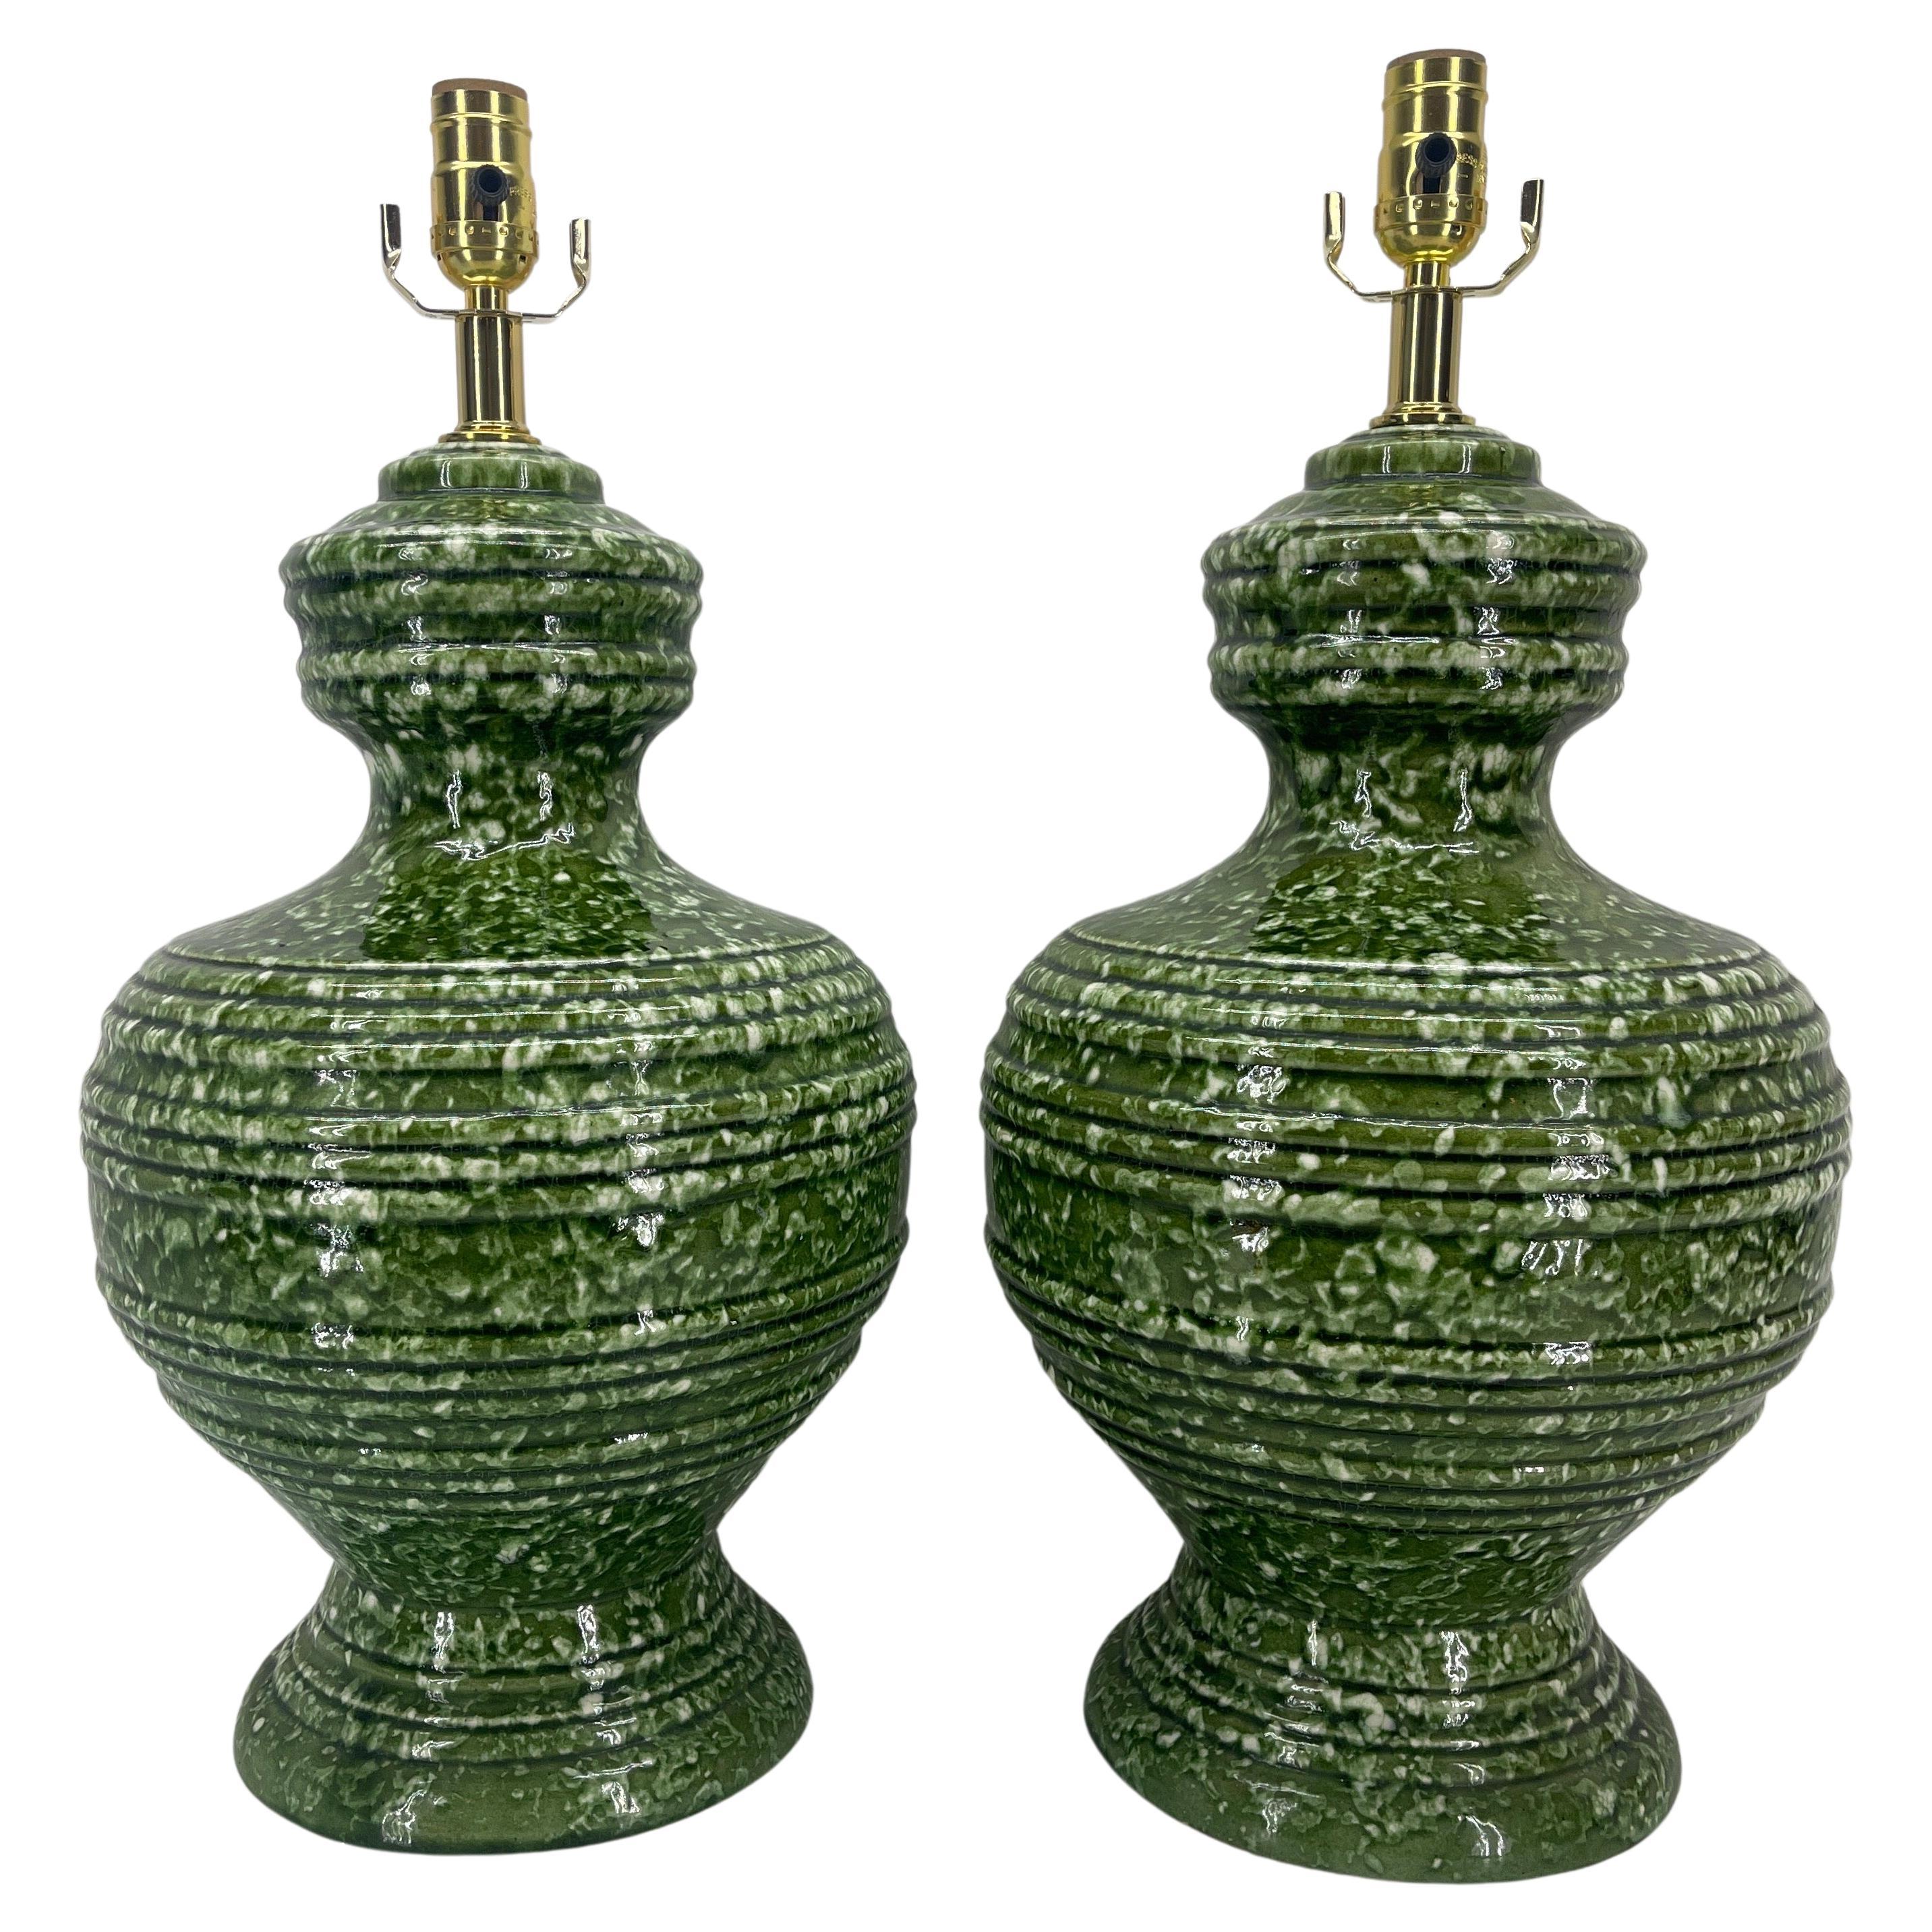 Pair of Green Mid-Century Italian Ceramic Lamps, circa 1960s